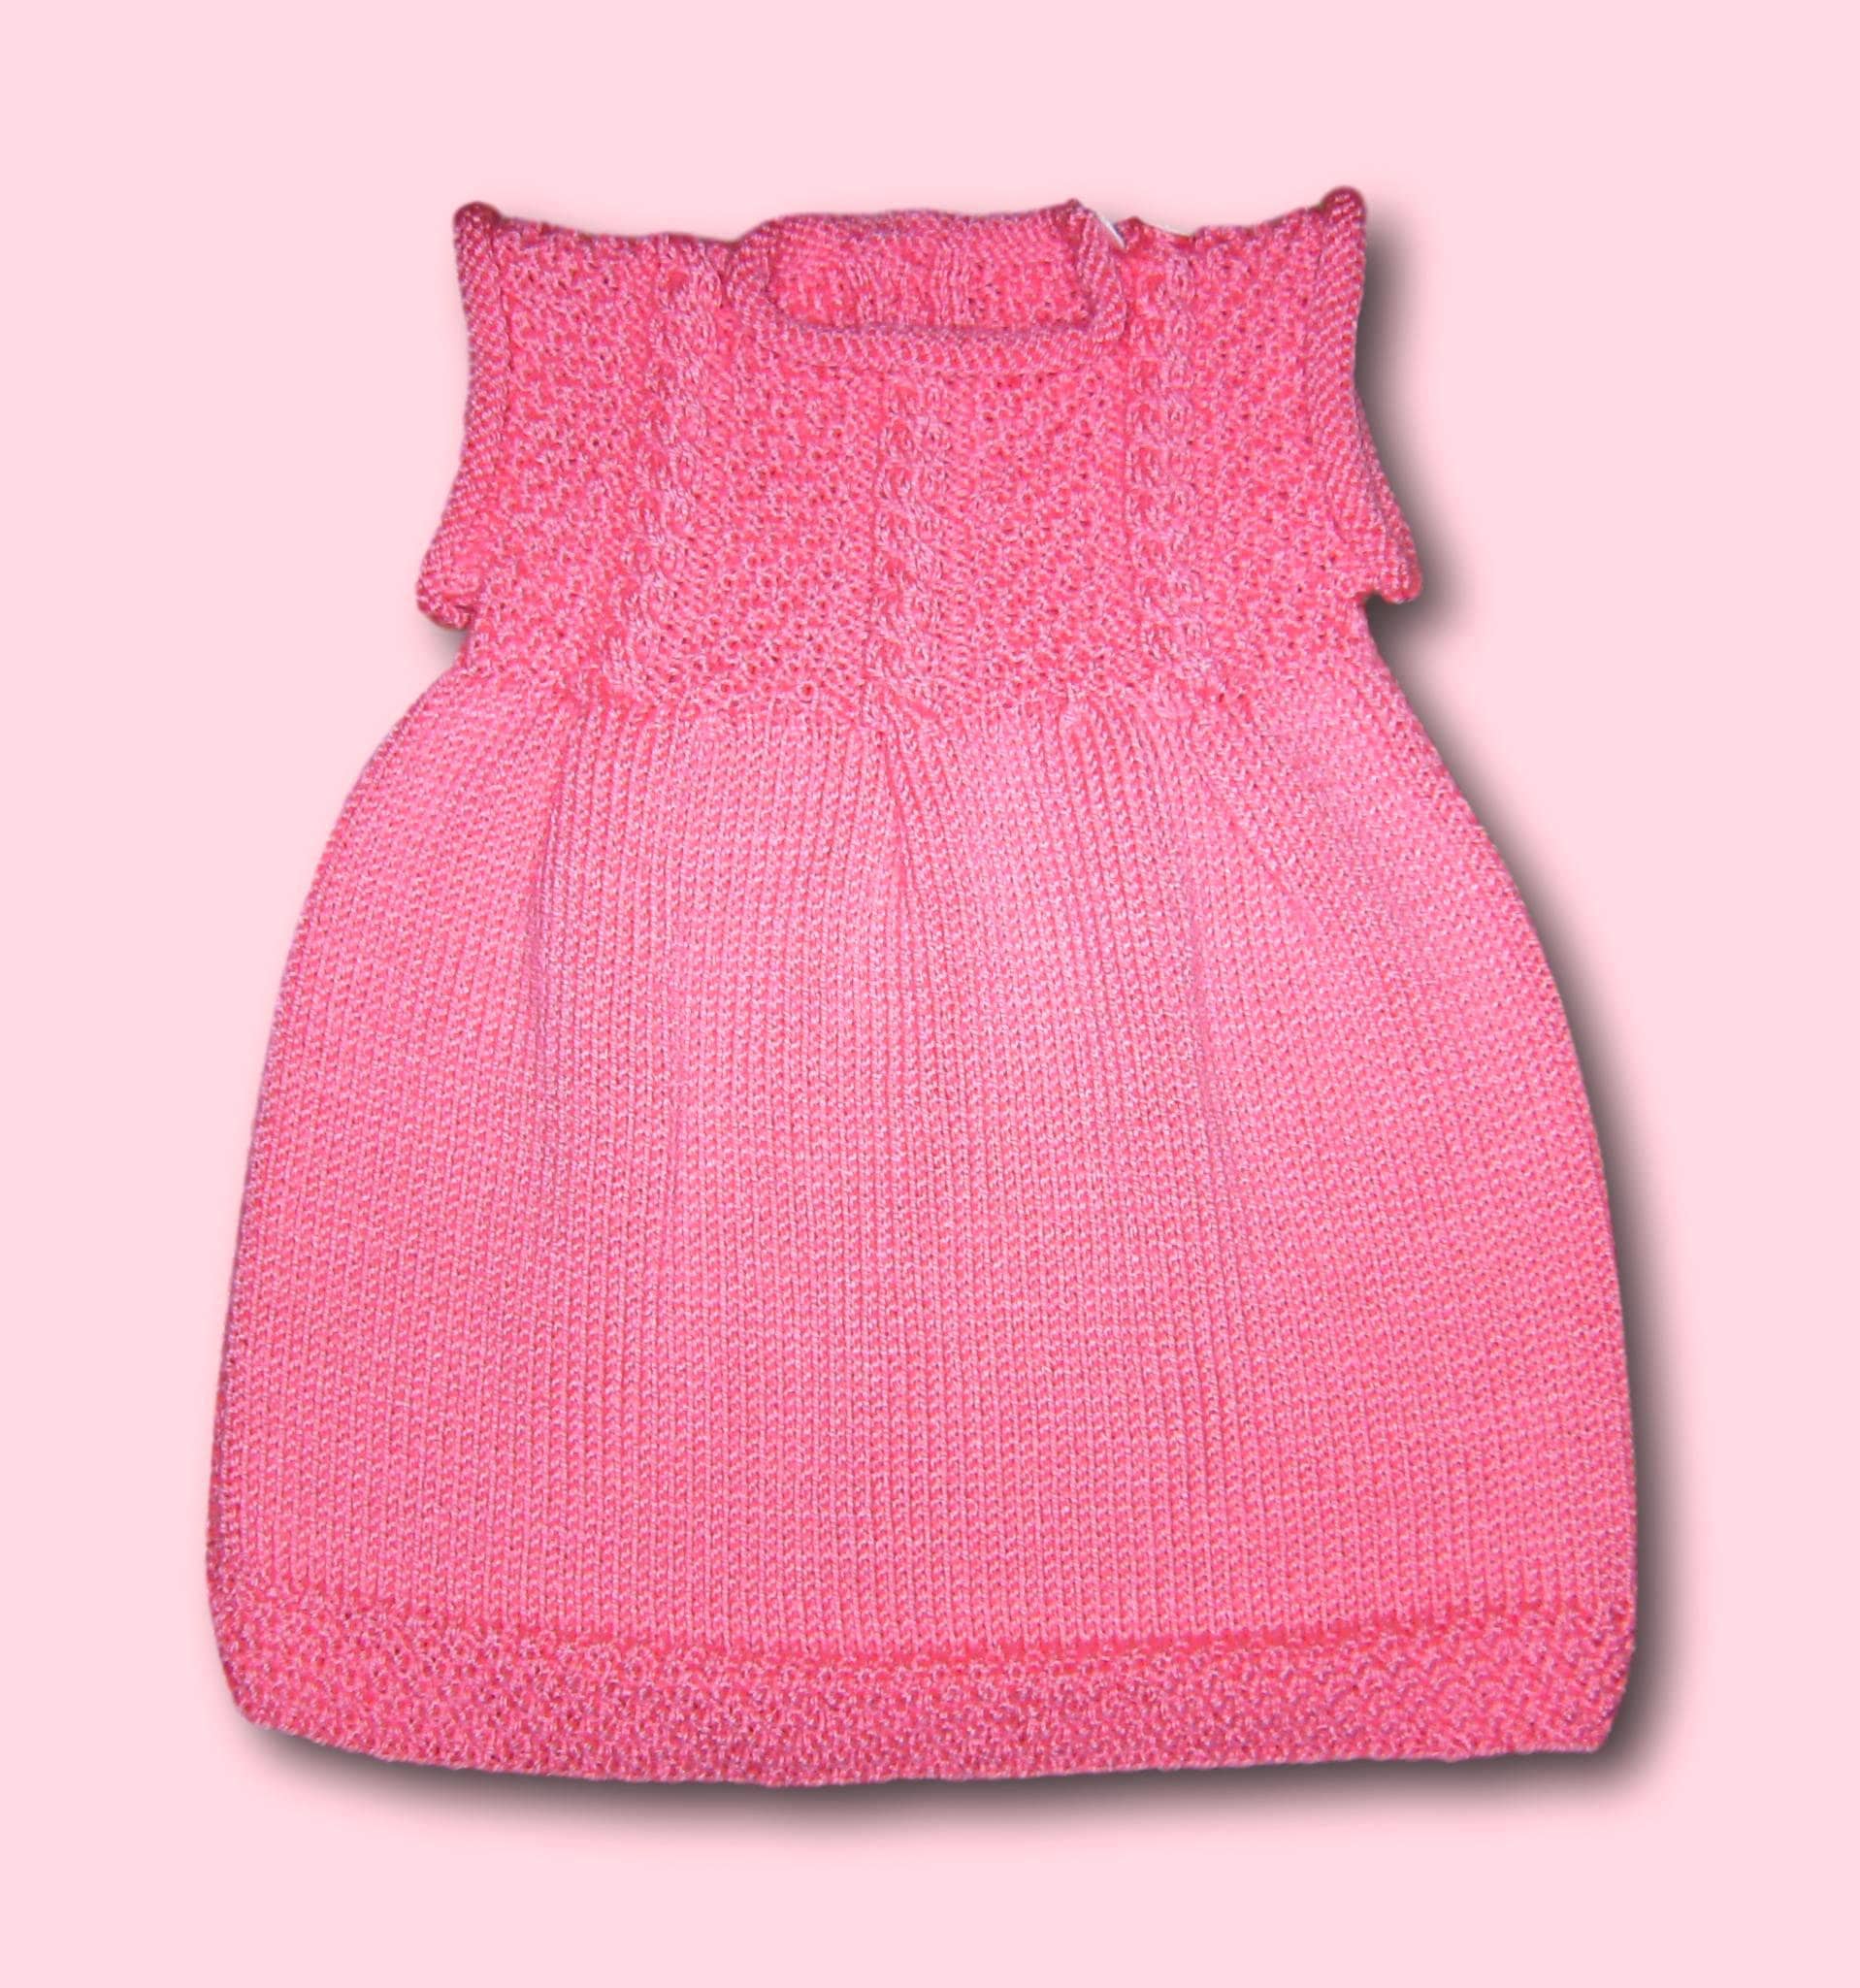 Baby Mädchen Kleid Strickkleid Pink Gr 74 80 Flamingo Rosa Mit Zopfmuster Neu Handmade Baby Girls Dress For 9 - 12 Months Pink Knitted von Puttelmuttel